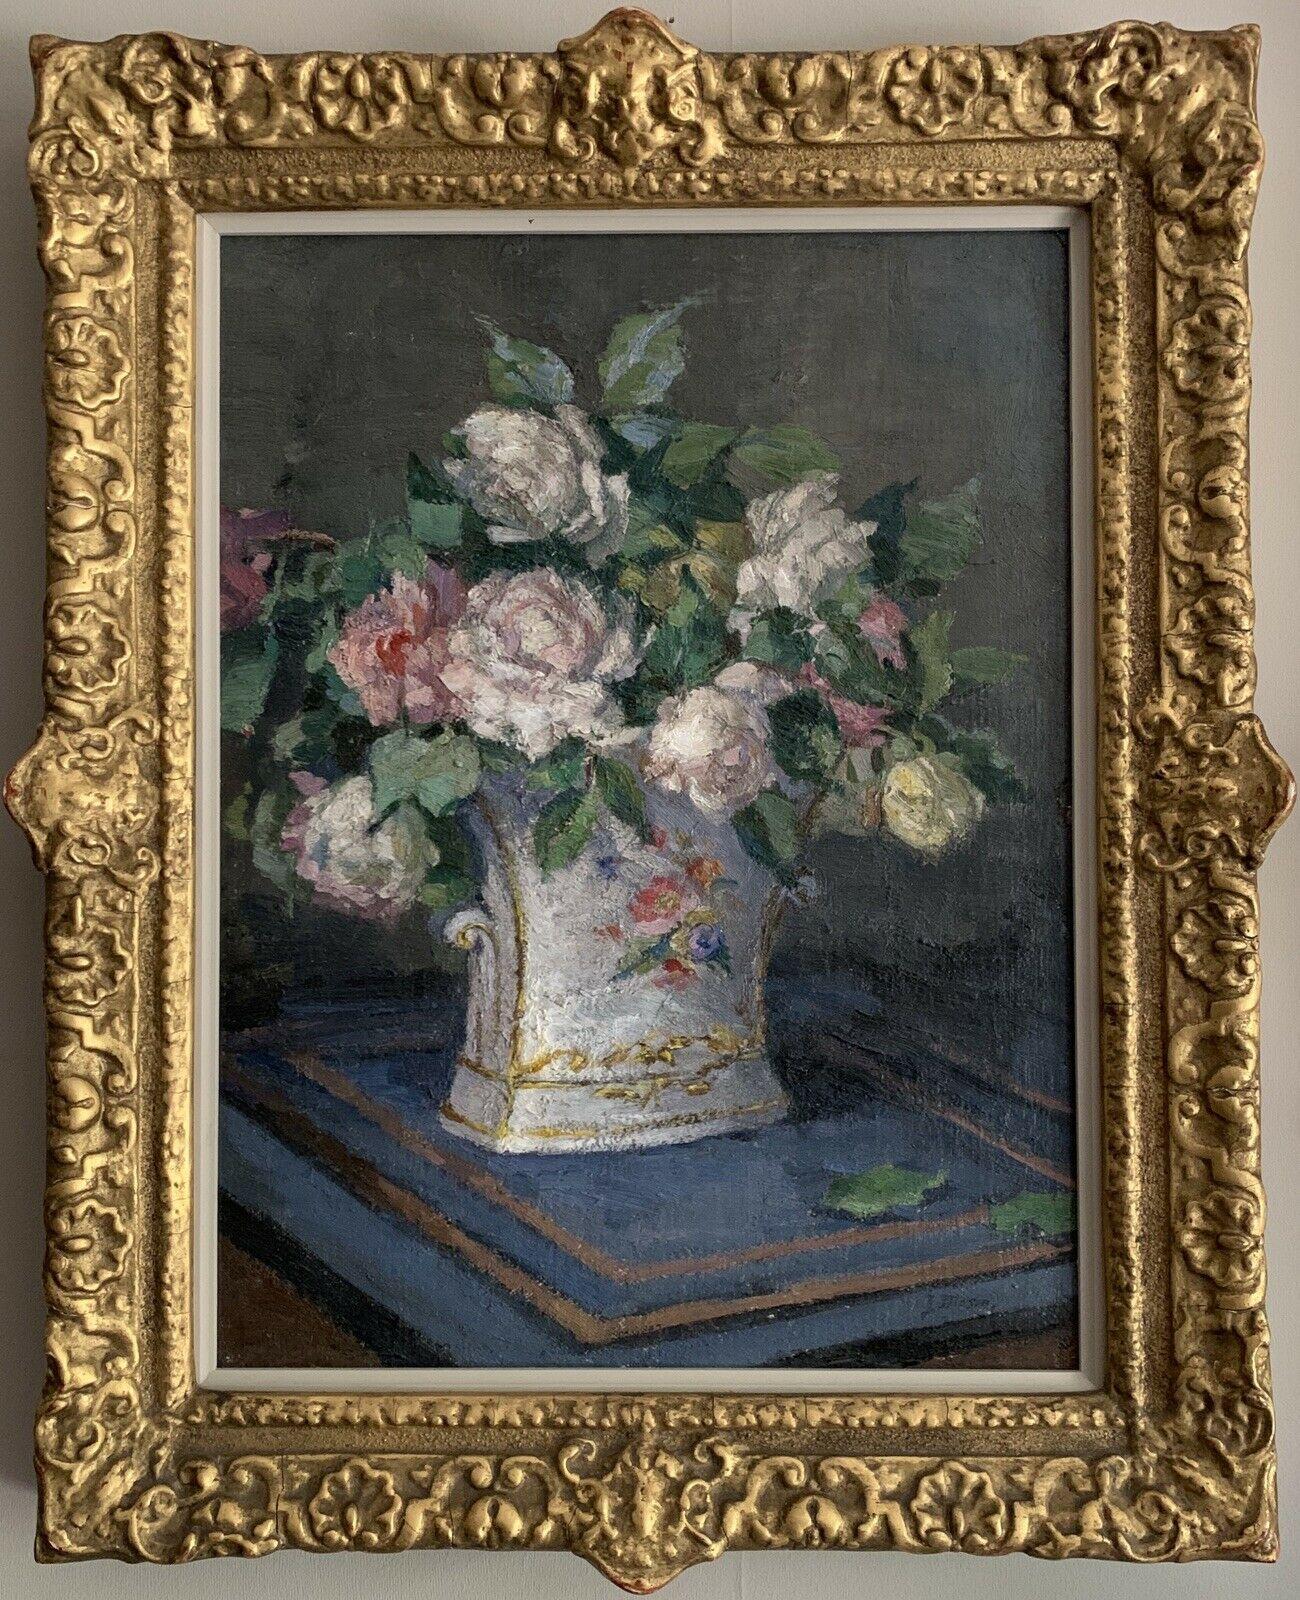 Still-Life Painting J. MASON - HUILE IMPRESSIONNISTE ANGLAISE DU DÉBUT DES ANNÉES 1900 - NATURE MORTE AUX ROSES DANS UN VASE ORNÉ